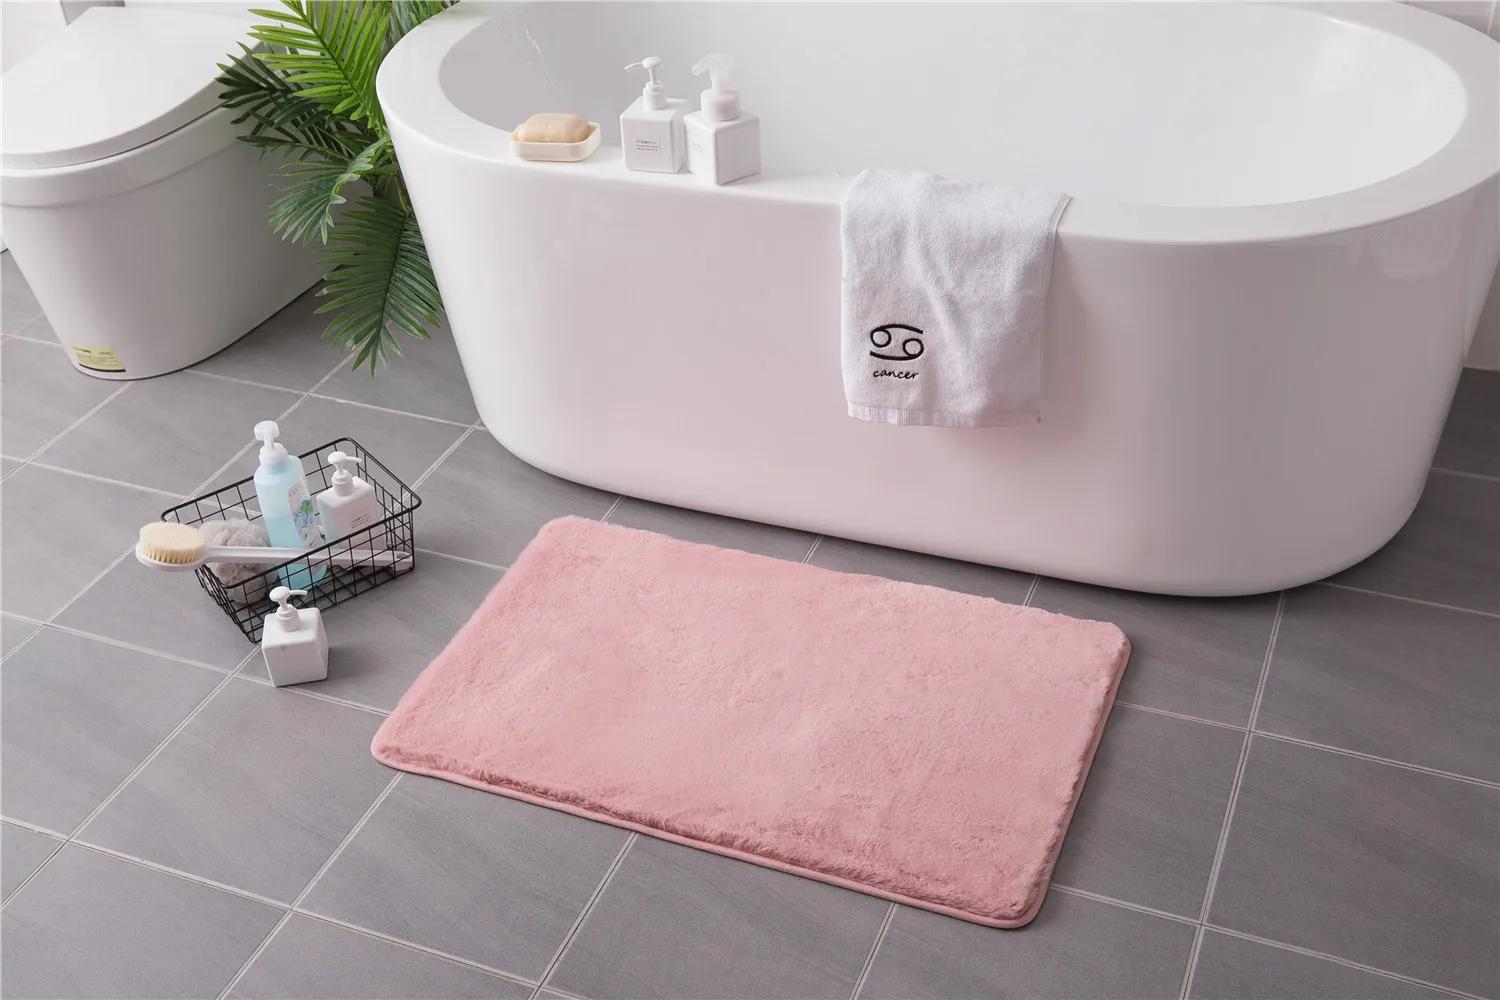 Супер мягкий коврик из искусственного кроличьего меха прикроватный коврик для ванной комнаты Нескользящий Впитывающий Коврик Белый Серый Розовый Пушистый Коврик для спальни